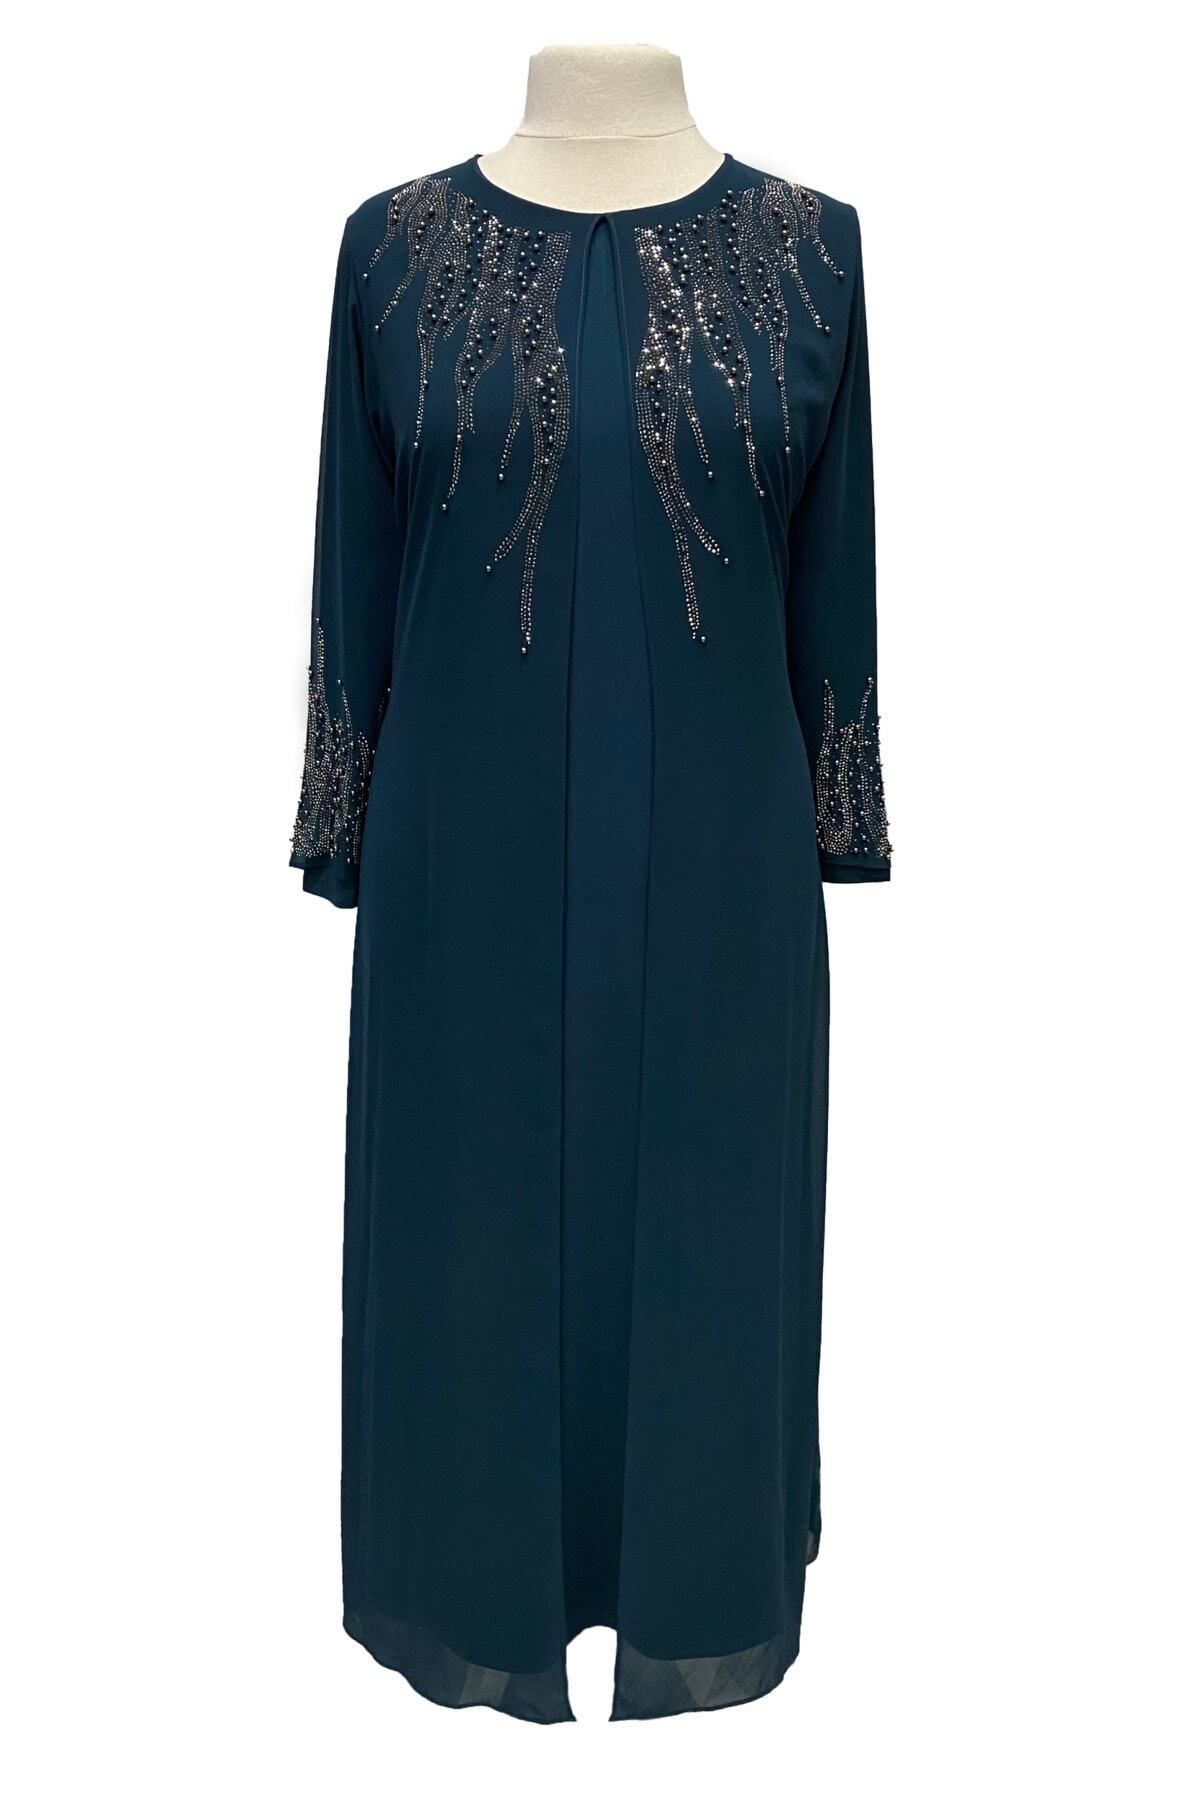 HESNA Petrol Mavi Alya Büyük Beden Şık Taş İşlemeli Anne Abiye Elbise